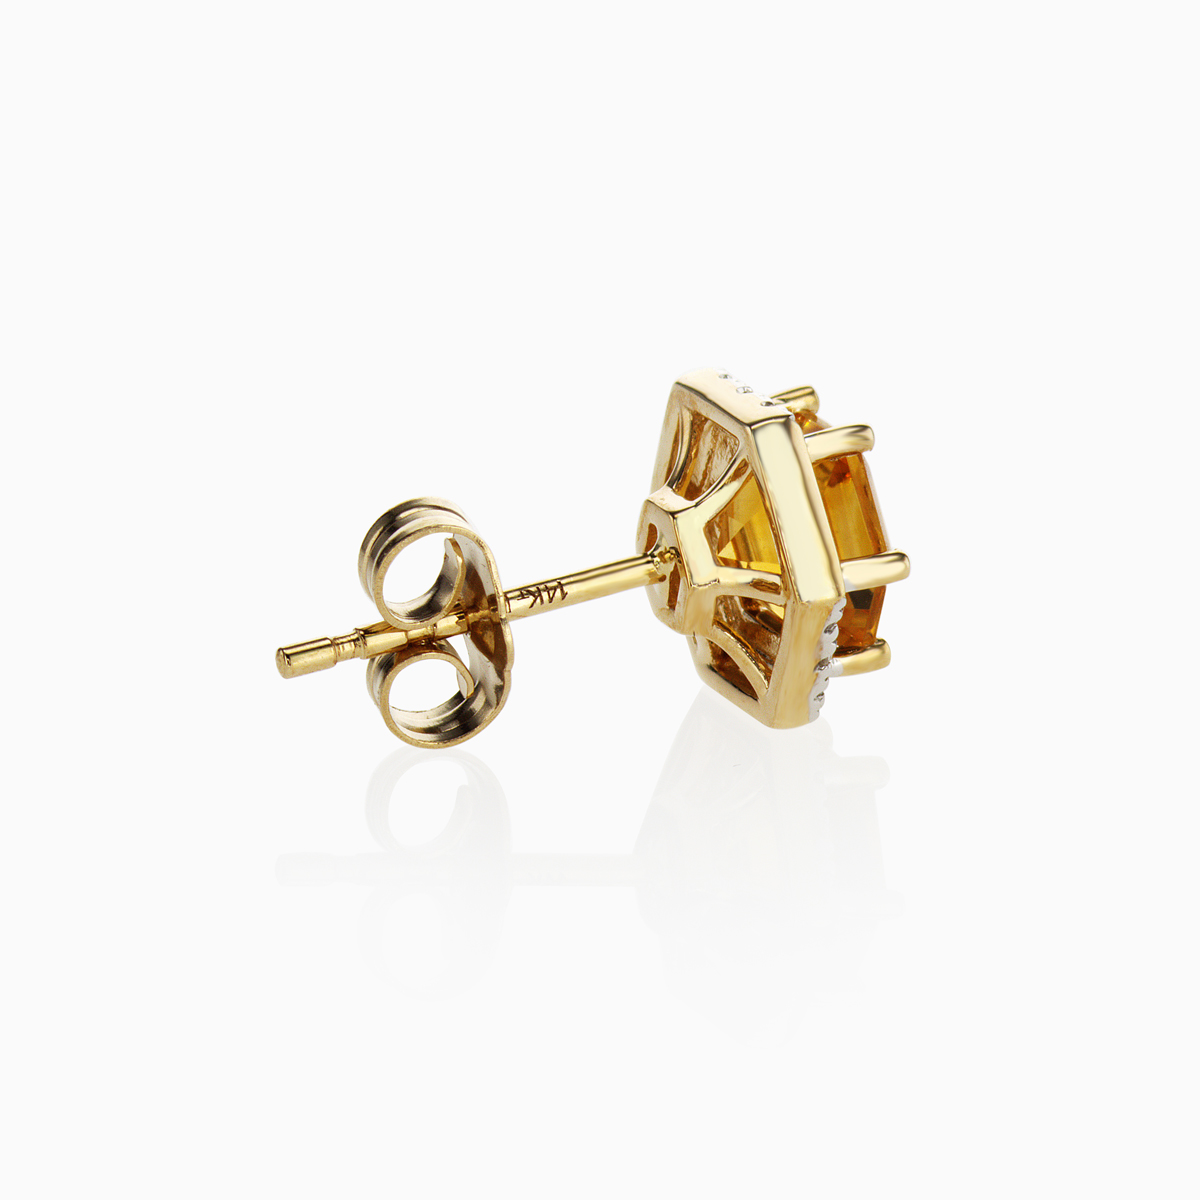 Natural Hexagon Citrine & Diamond Stud Earrings, 14k Gold